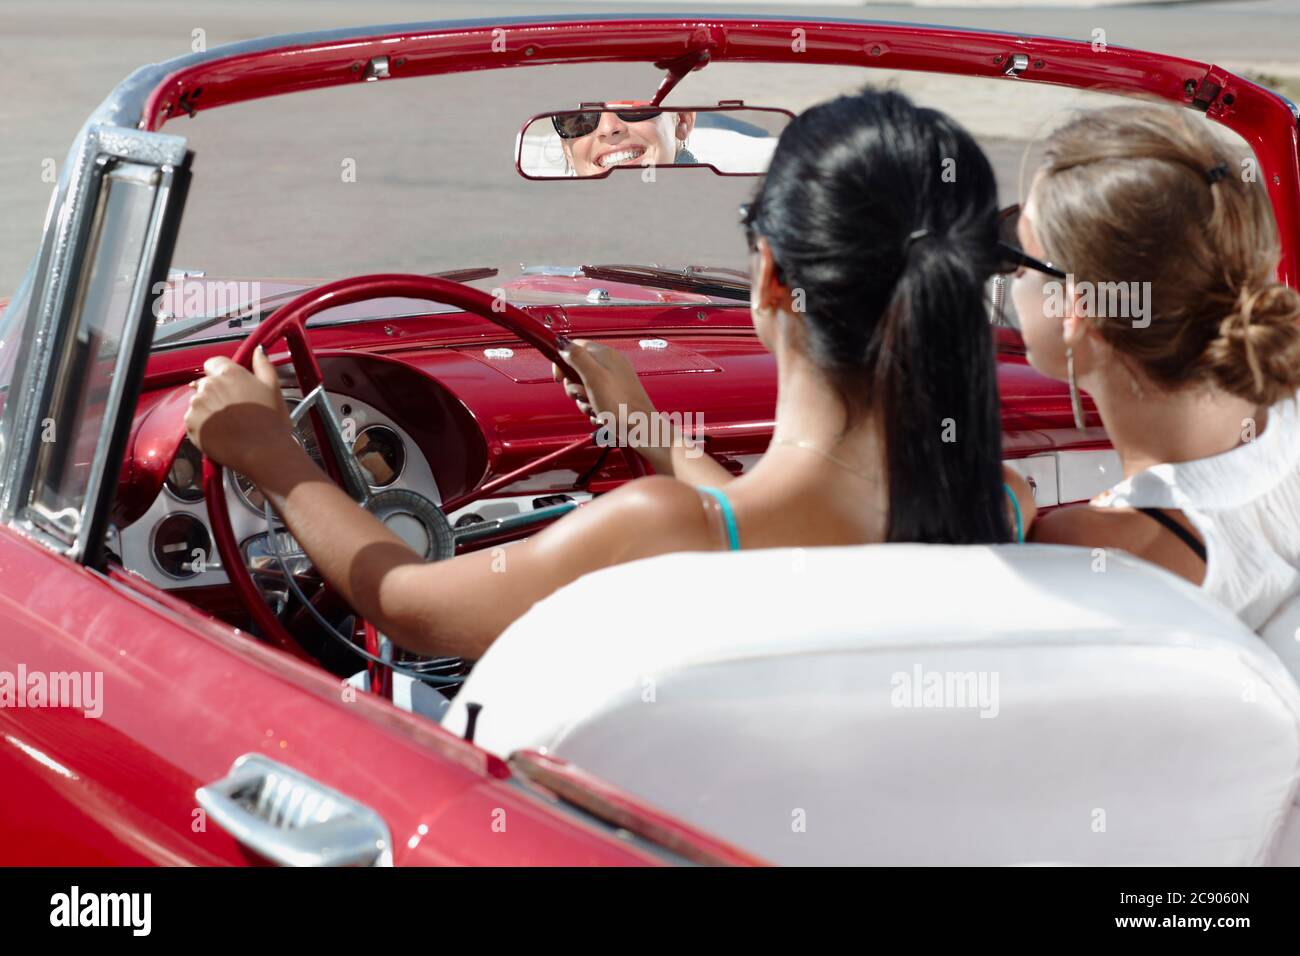 Les femmes heureuses conduisent une voiture convertible louée pour des vacances Banque D'Images